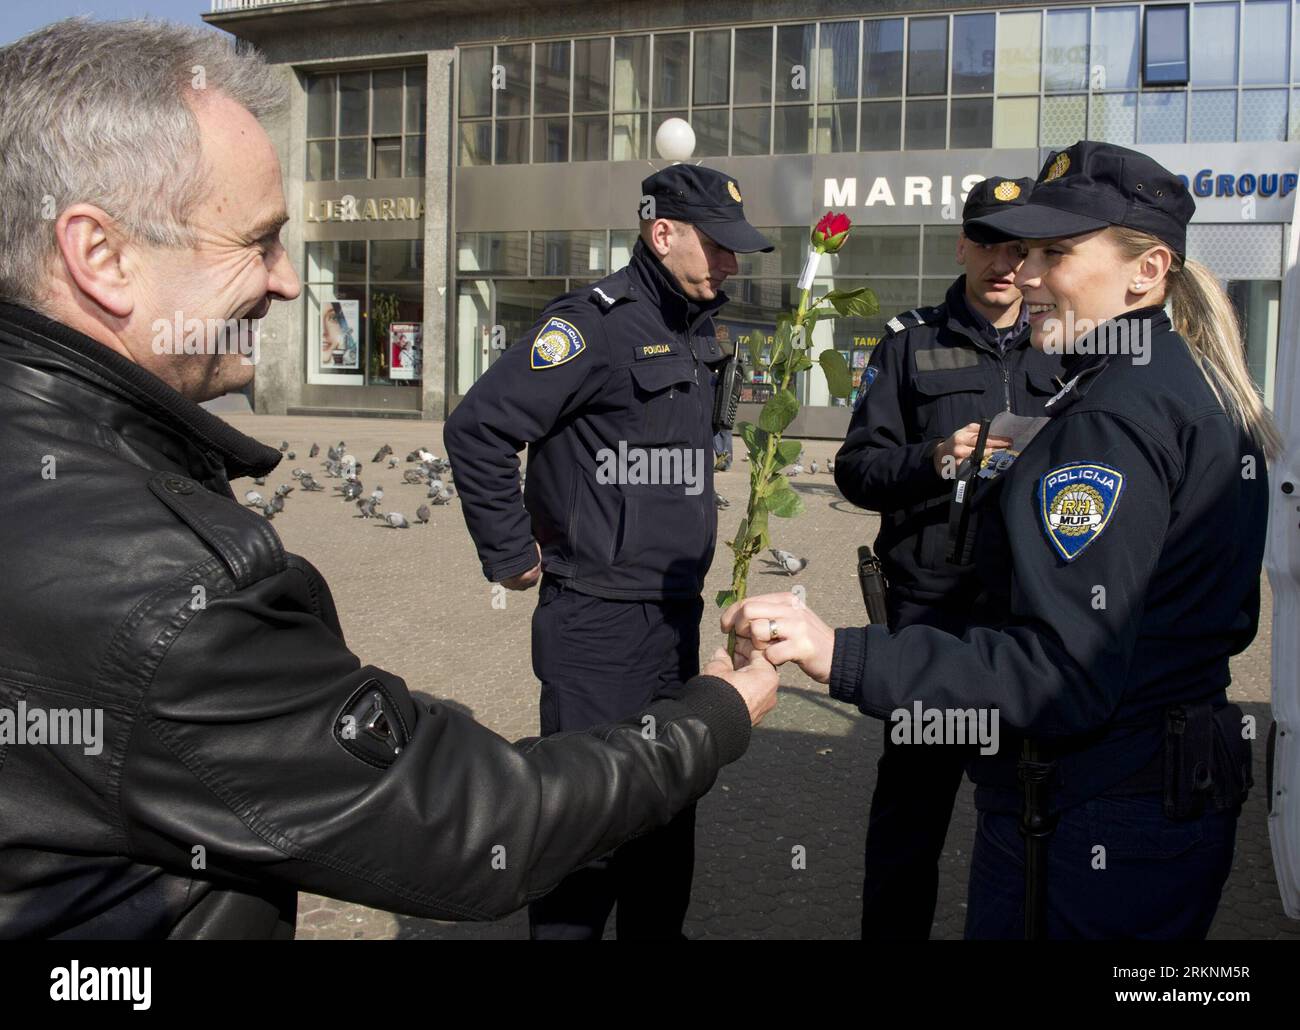 Bildnummer: 57291415 Datum: 08.03.2012 Copyright: imago/Xinhua (120308) -- ZAGABRIA, 8 marzo 2012 (Xinhua) -- Una poliziotta croata riceve una rosa rossa offerta da un volontario a Zagabria, capitale della Croazia, 8 marzo 2012. Alcuni partiti politici e organizzazioni hanno distribuito fiori alle donne in occasione della giornata internazionale della donna. (Xinhua/Miso Lisanin) CROAZIA-ZAGABRIA-GIORNATA INTERNAZIONALE DELLE DONNE PUBLICATIONxNOTxINxCHN Gesellschaft Internationaler Frauentag Weltfrauentag premiumd xrj x0x 2012 quer 57291415 Data 08 03 2012 Copyright Imago XINHUA Zagabria 8 marzo 2012 XINHUA a croato p Foto Stock